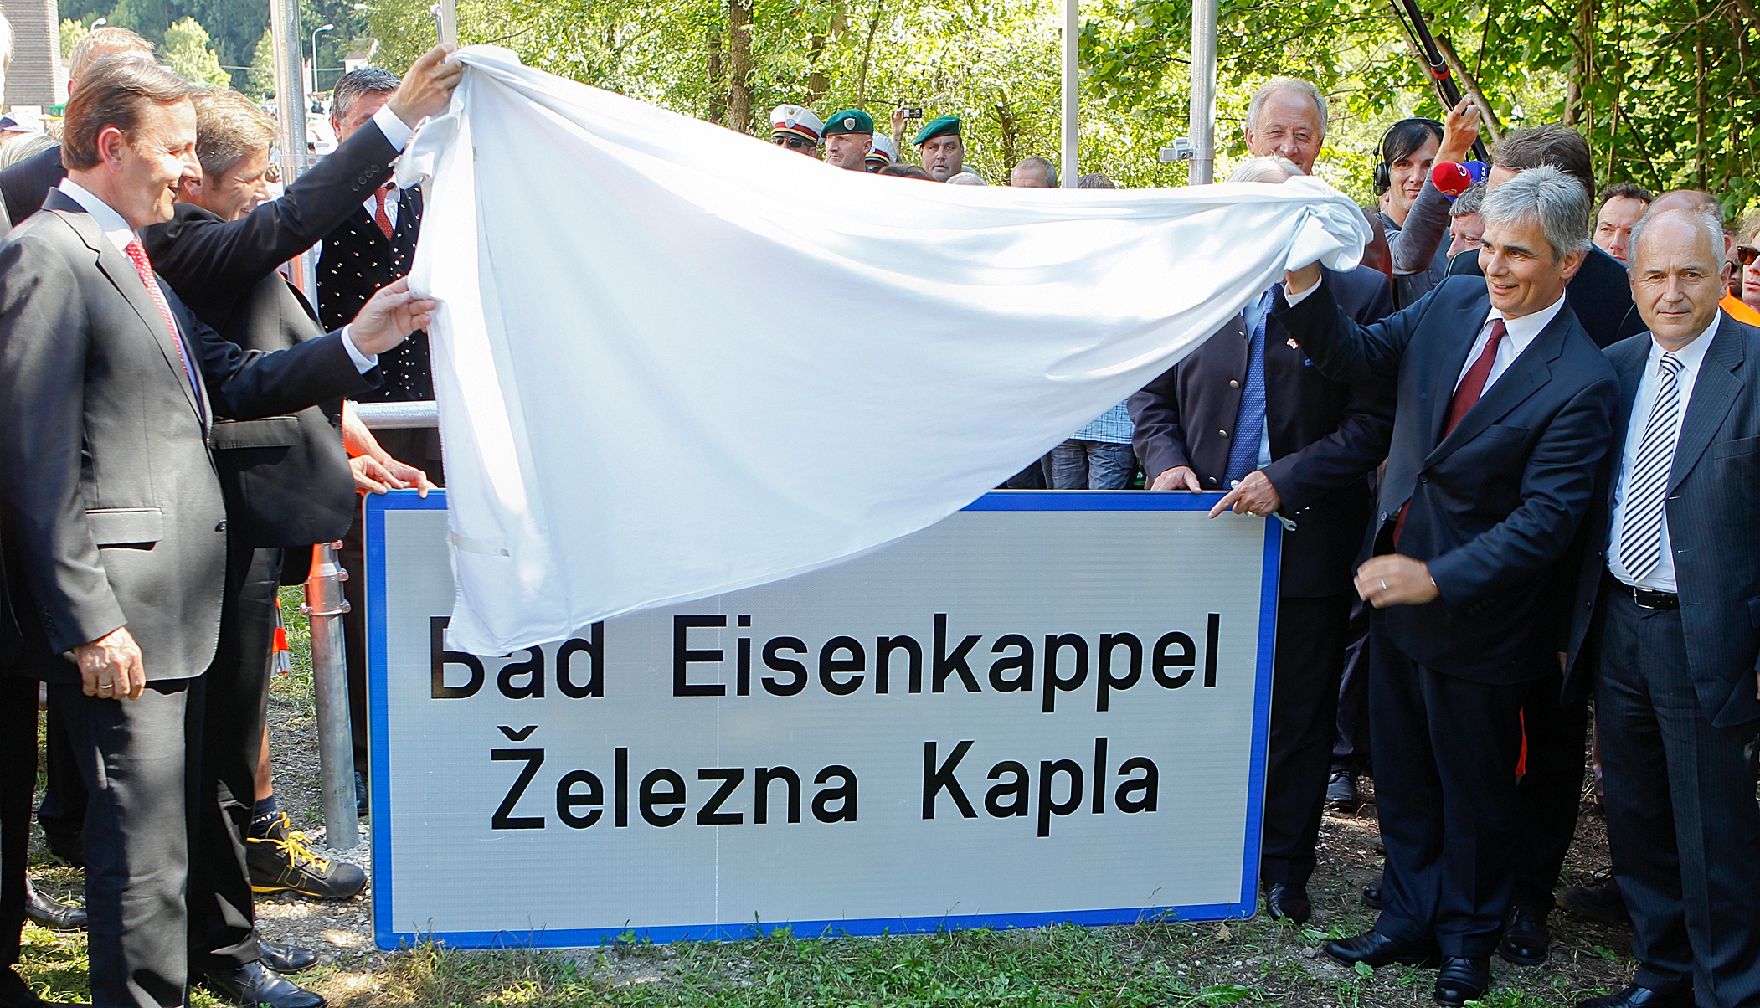 Am 16. August 2011 nahm Bundeskanzler Werner Faymann gemeinsam mit Staatssekretär Josef Ostermayer, im Rahmen eines Festakts an der Aufstellung der zweisprachigen Ortstafeln in Bad Eisenkappel teil.